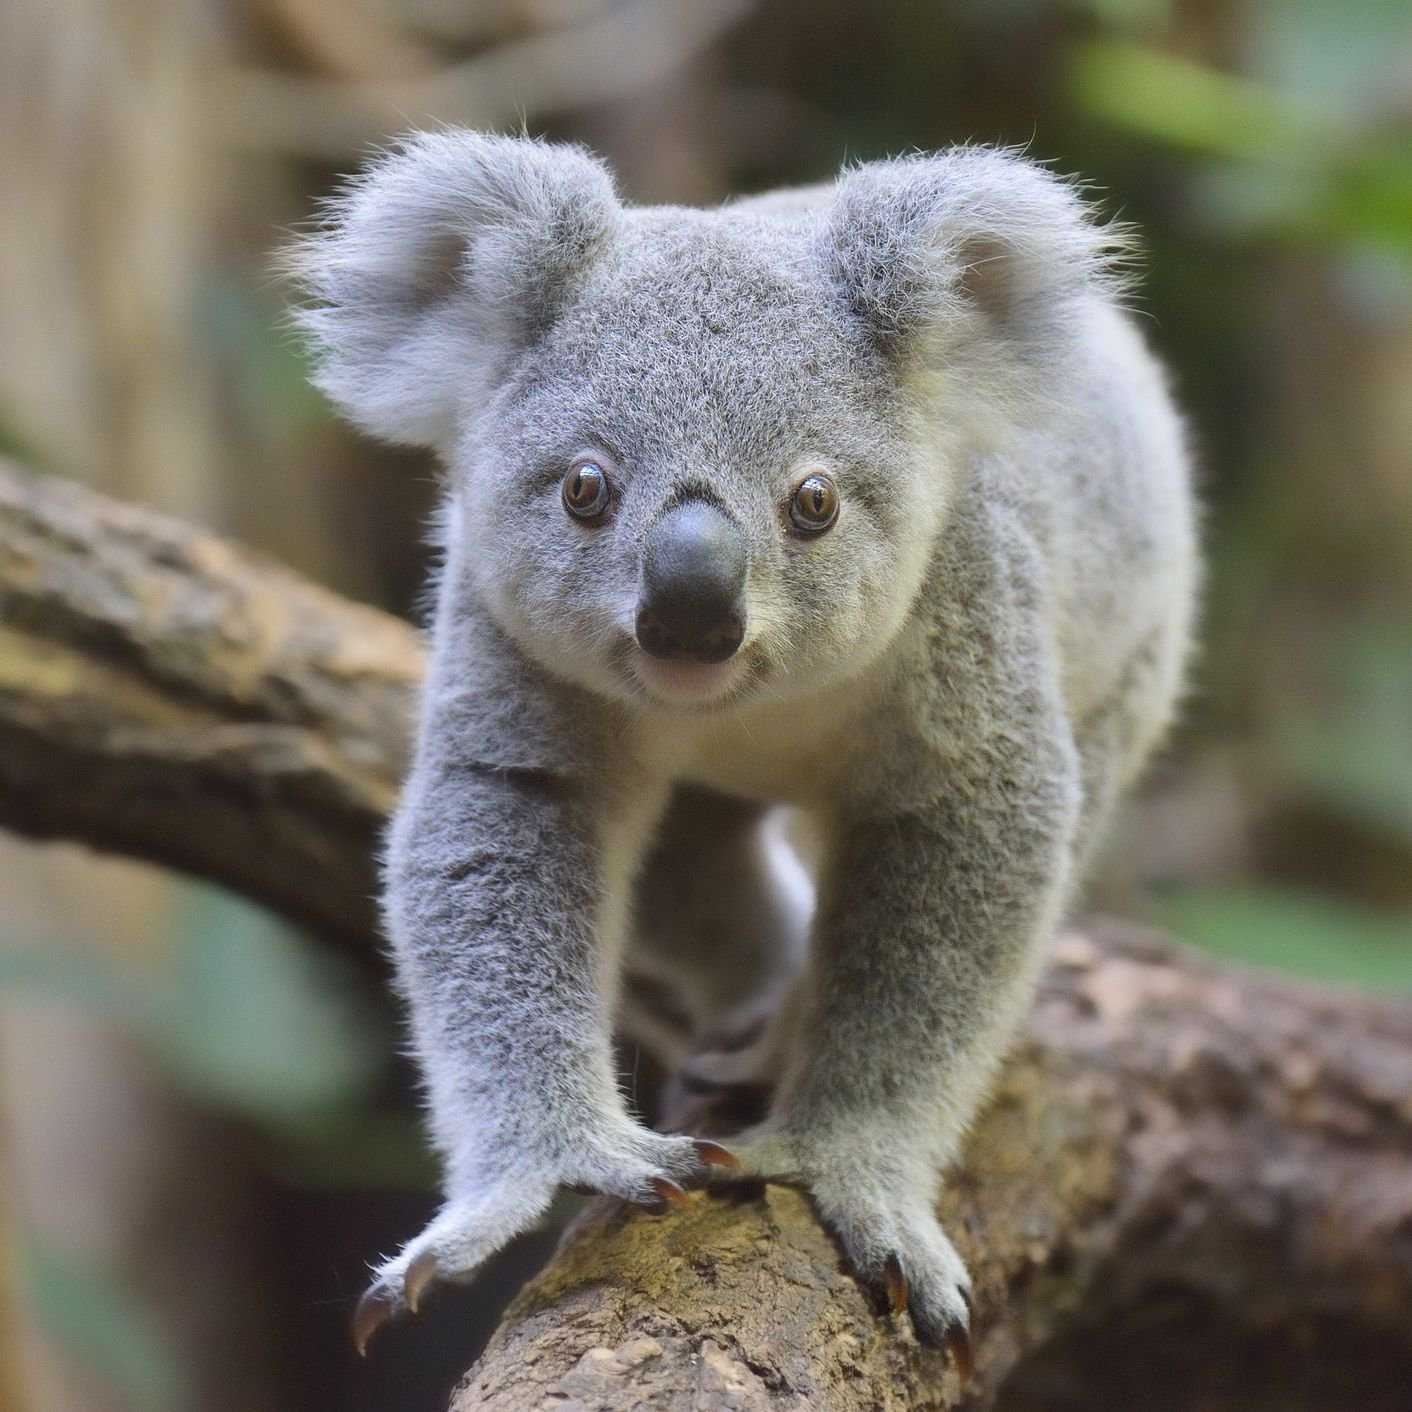 Koala image classifcation dataset for machine learning